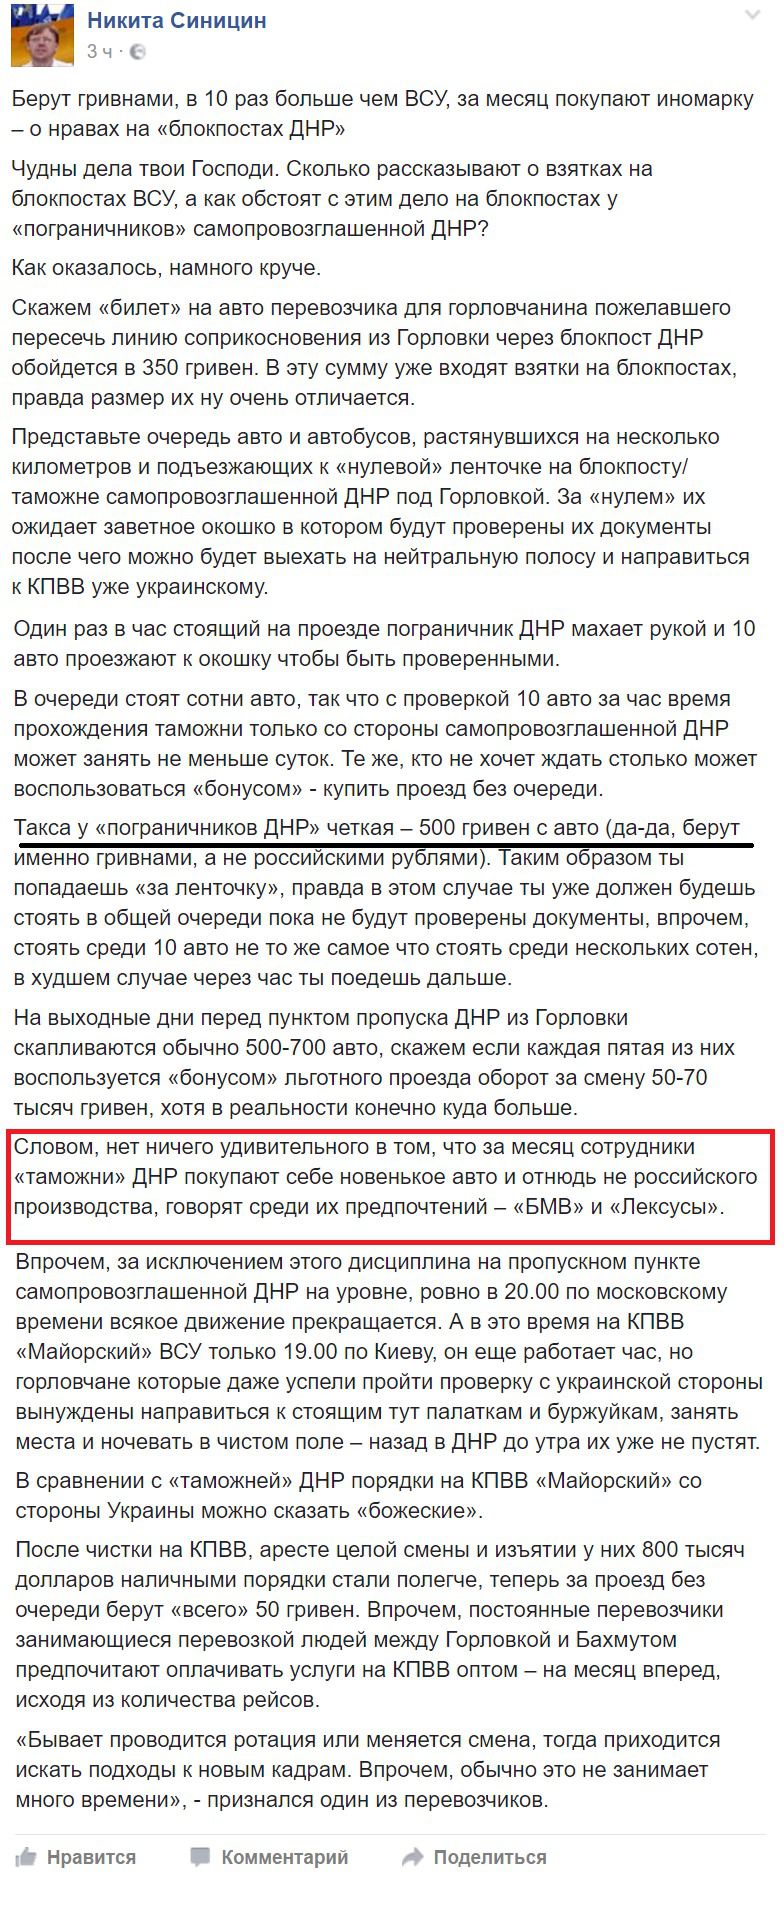 Житель Горлівки розповів про грабіж жителів Донбасу на блокпостах "ДНР". Беруть лише гривнями, по 500 грн з машини.